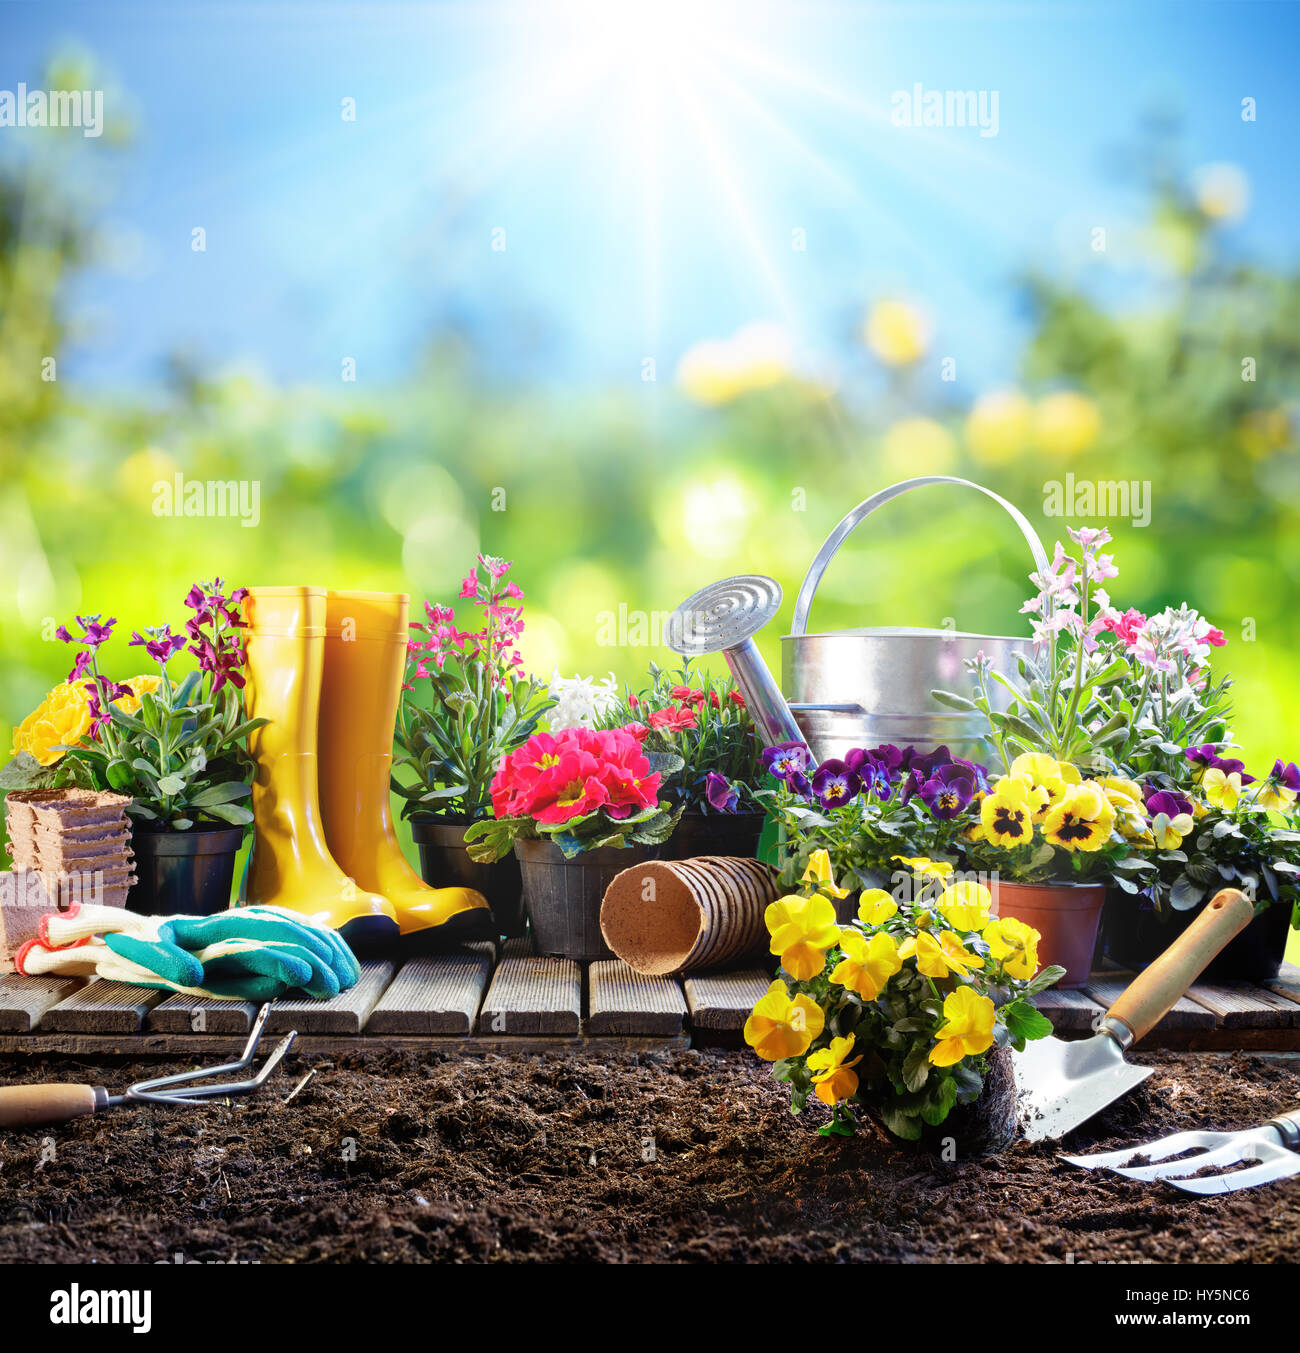 Gartenarbeit - Ausrüstung für Gärtner mit Blumentöpfen Stockfoto